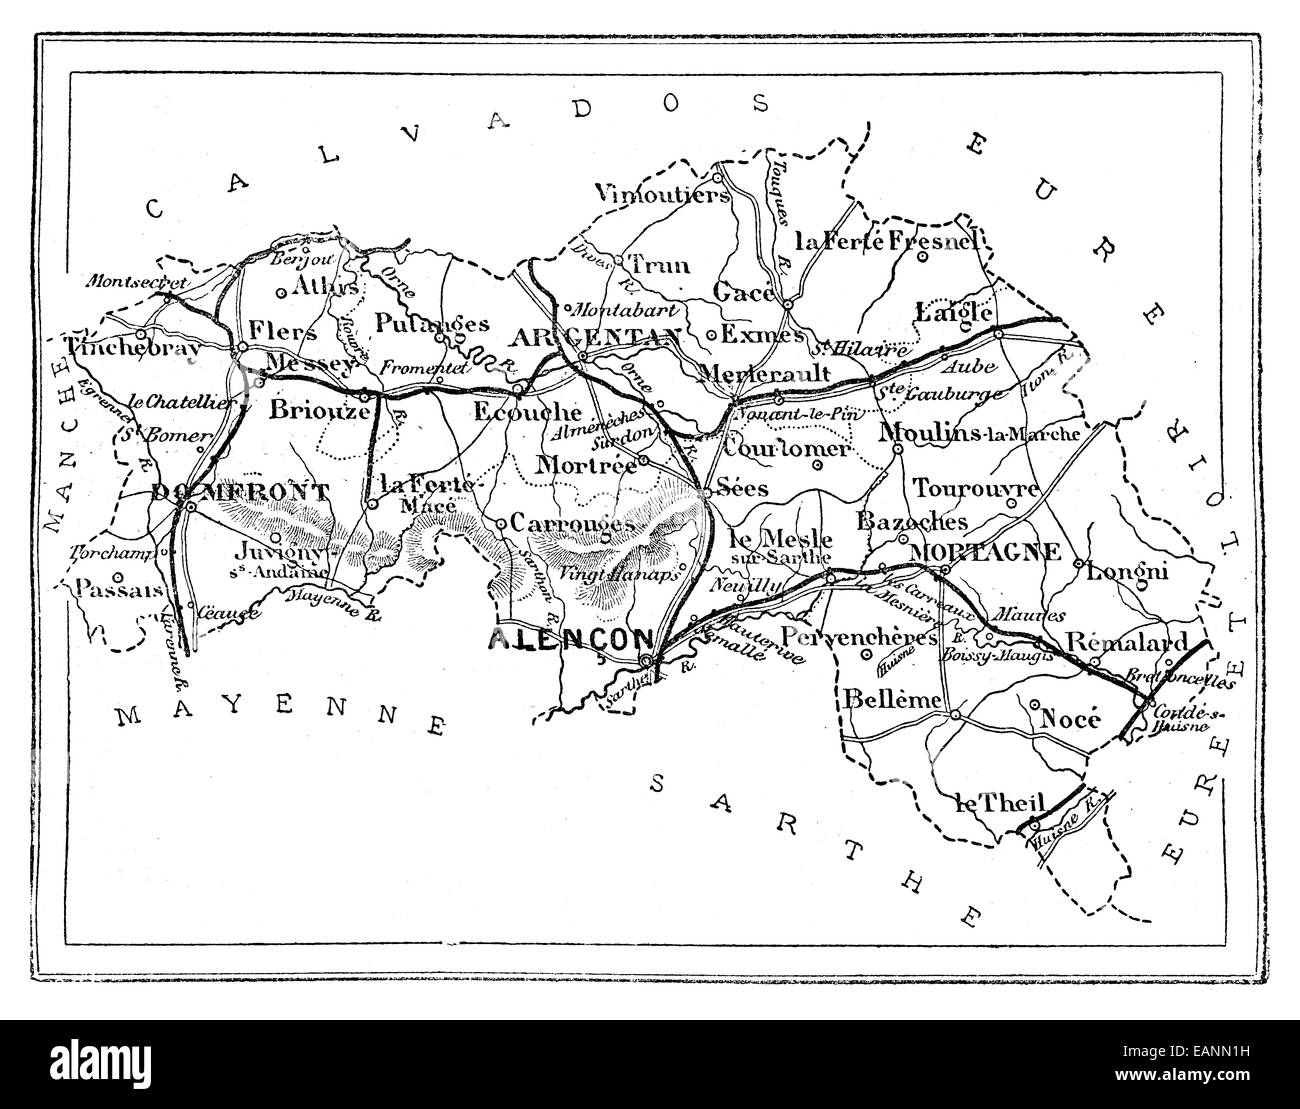 Mapa del departamento de Orne, vintage ilustración grabada. Journal des viaje, viaje oficial, (1880-81). Foto de stock